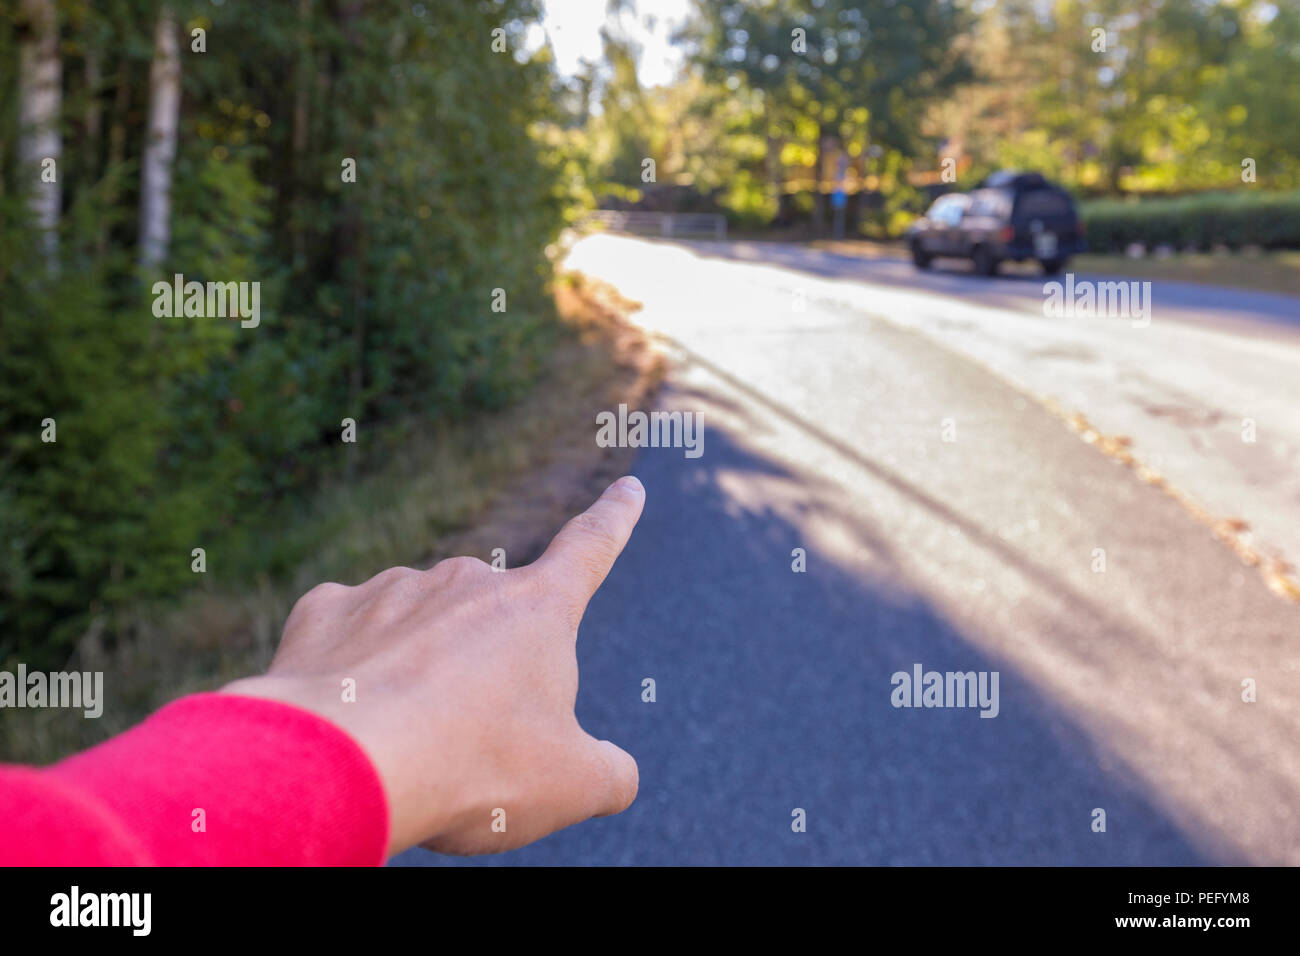 Persona della mano e dito indice puntato dritto su una strada, dare indicazioni Foto Stock